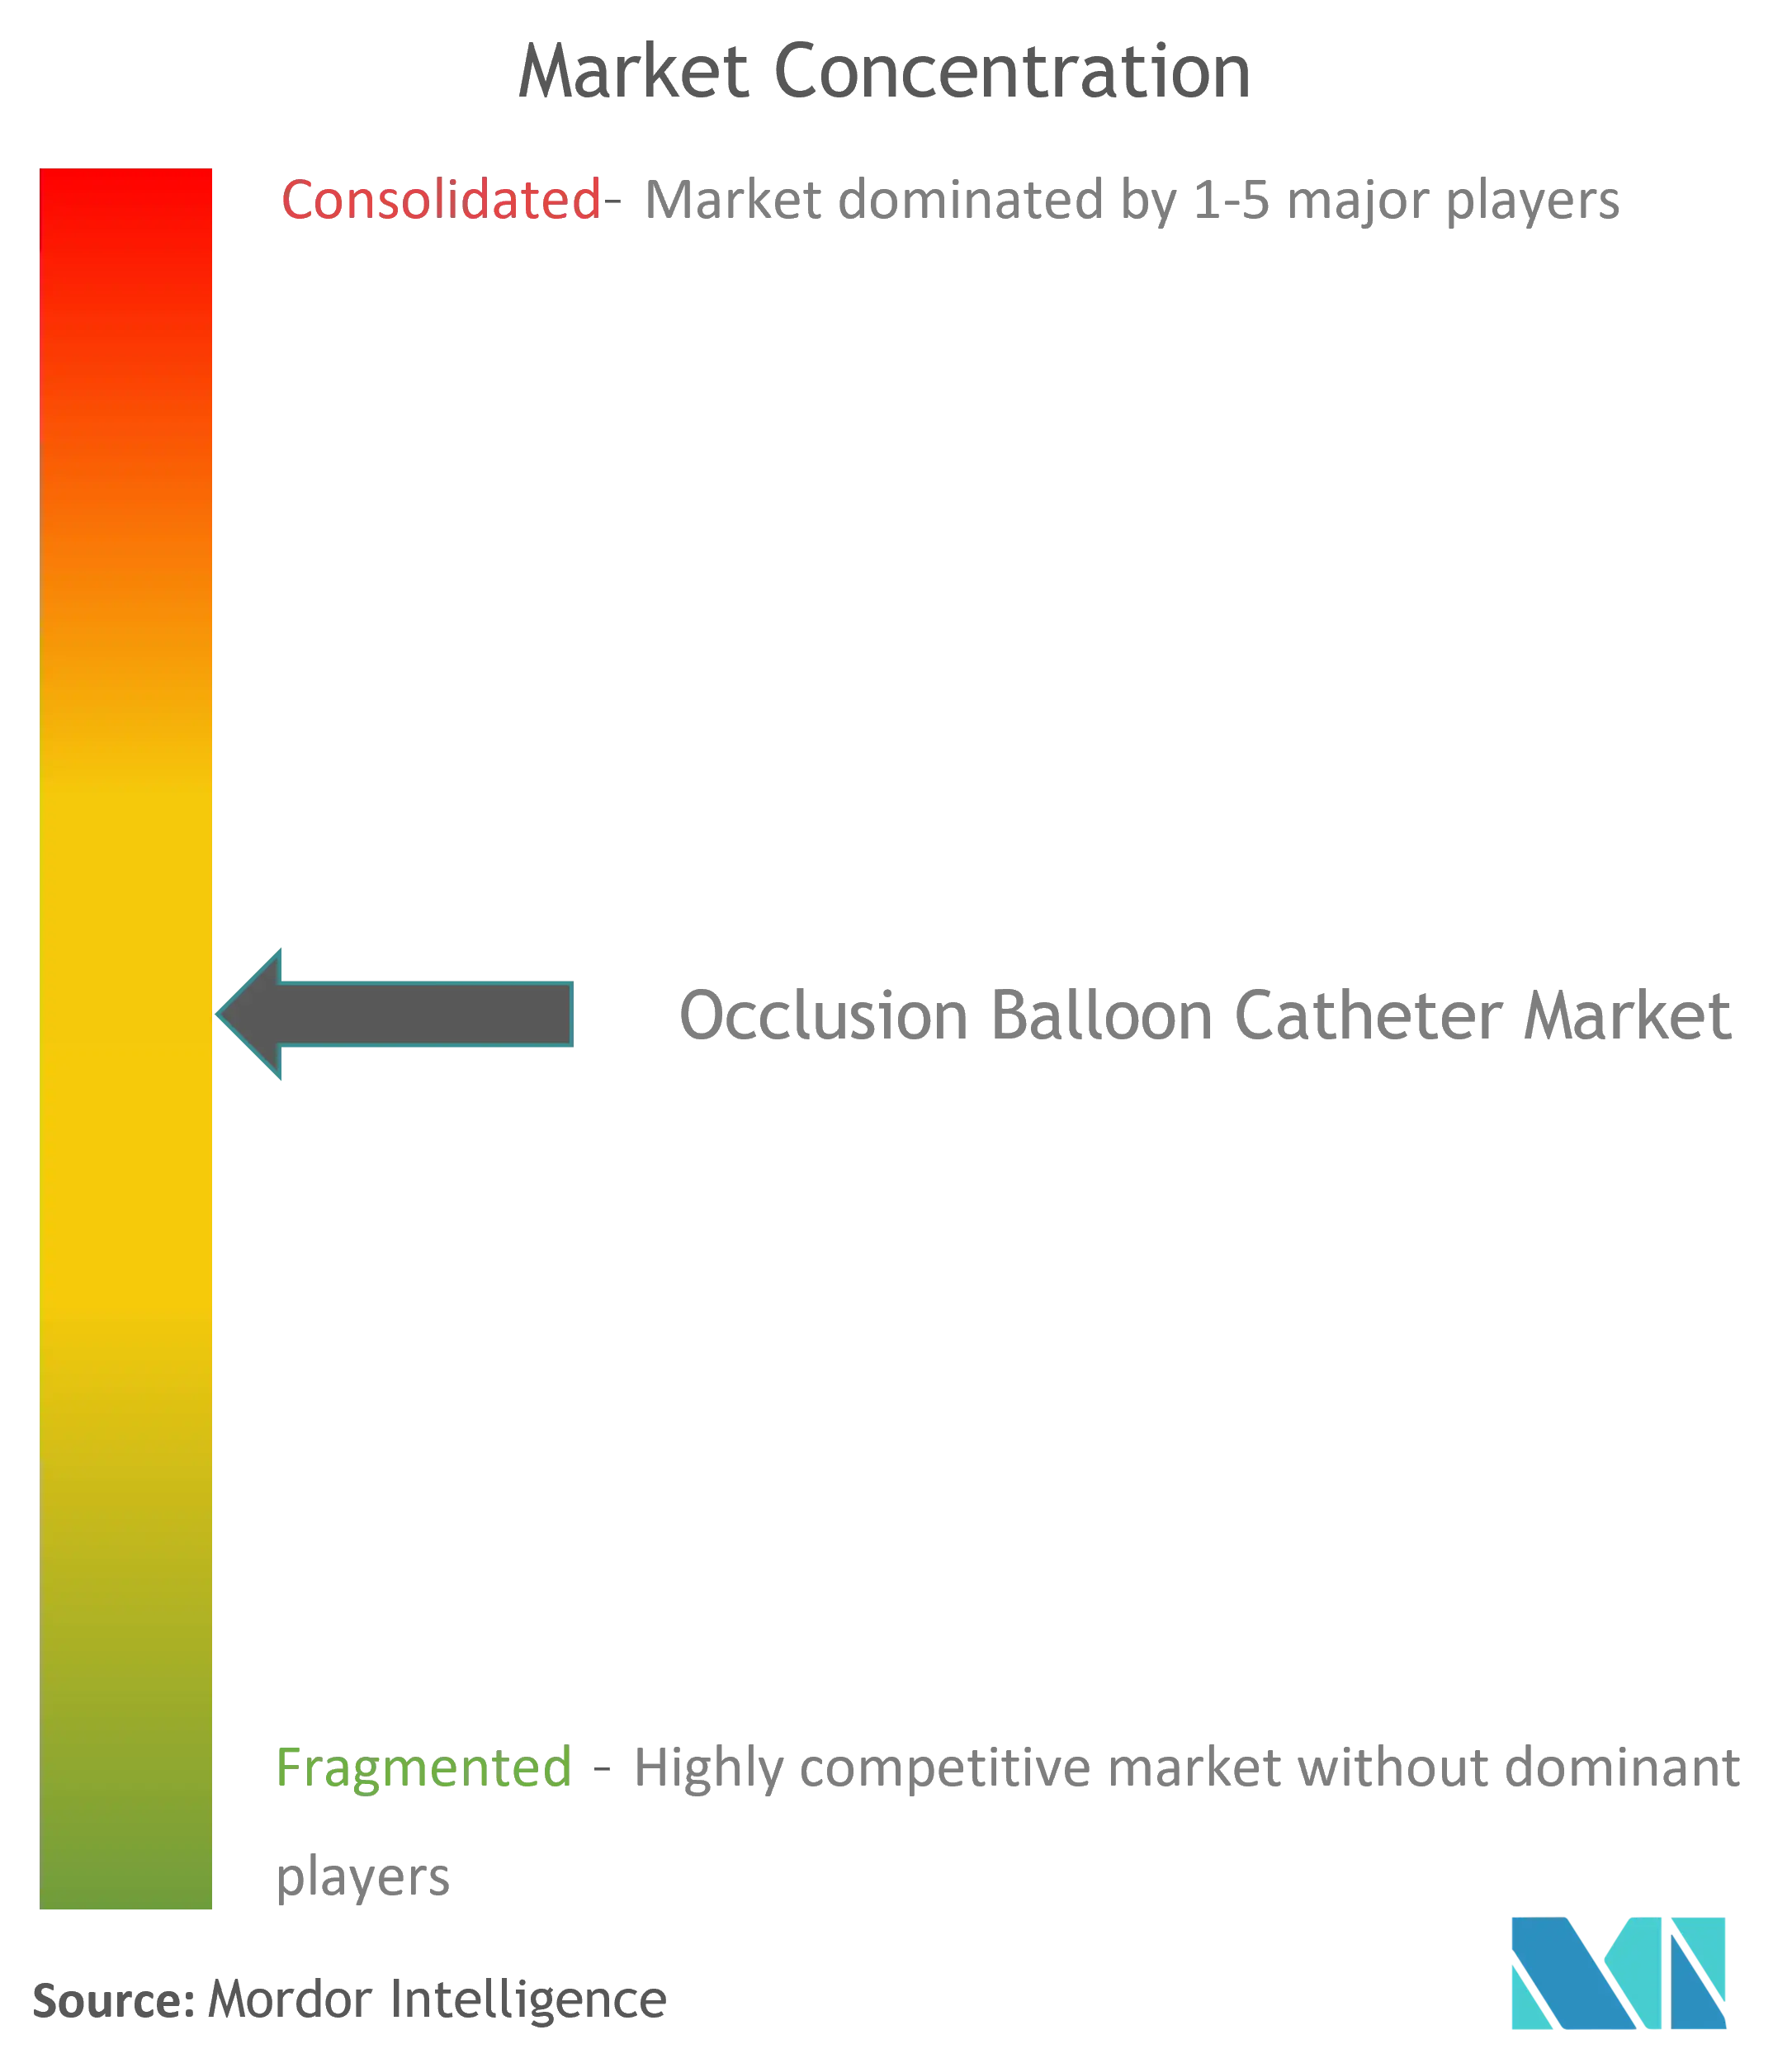 Cathéter à ballonnet d'occlusionConcentration du marché